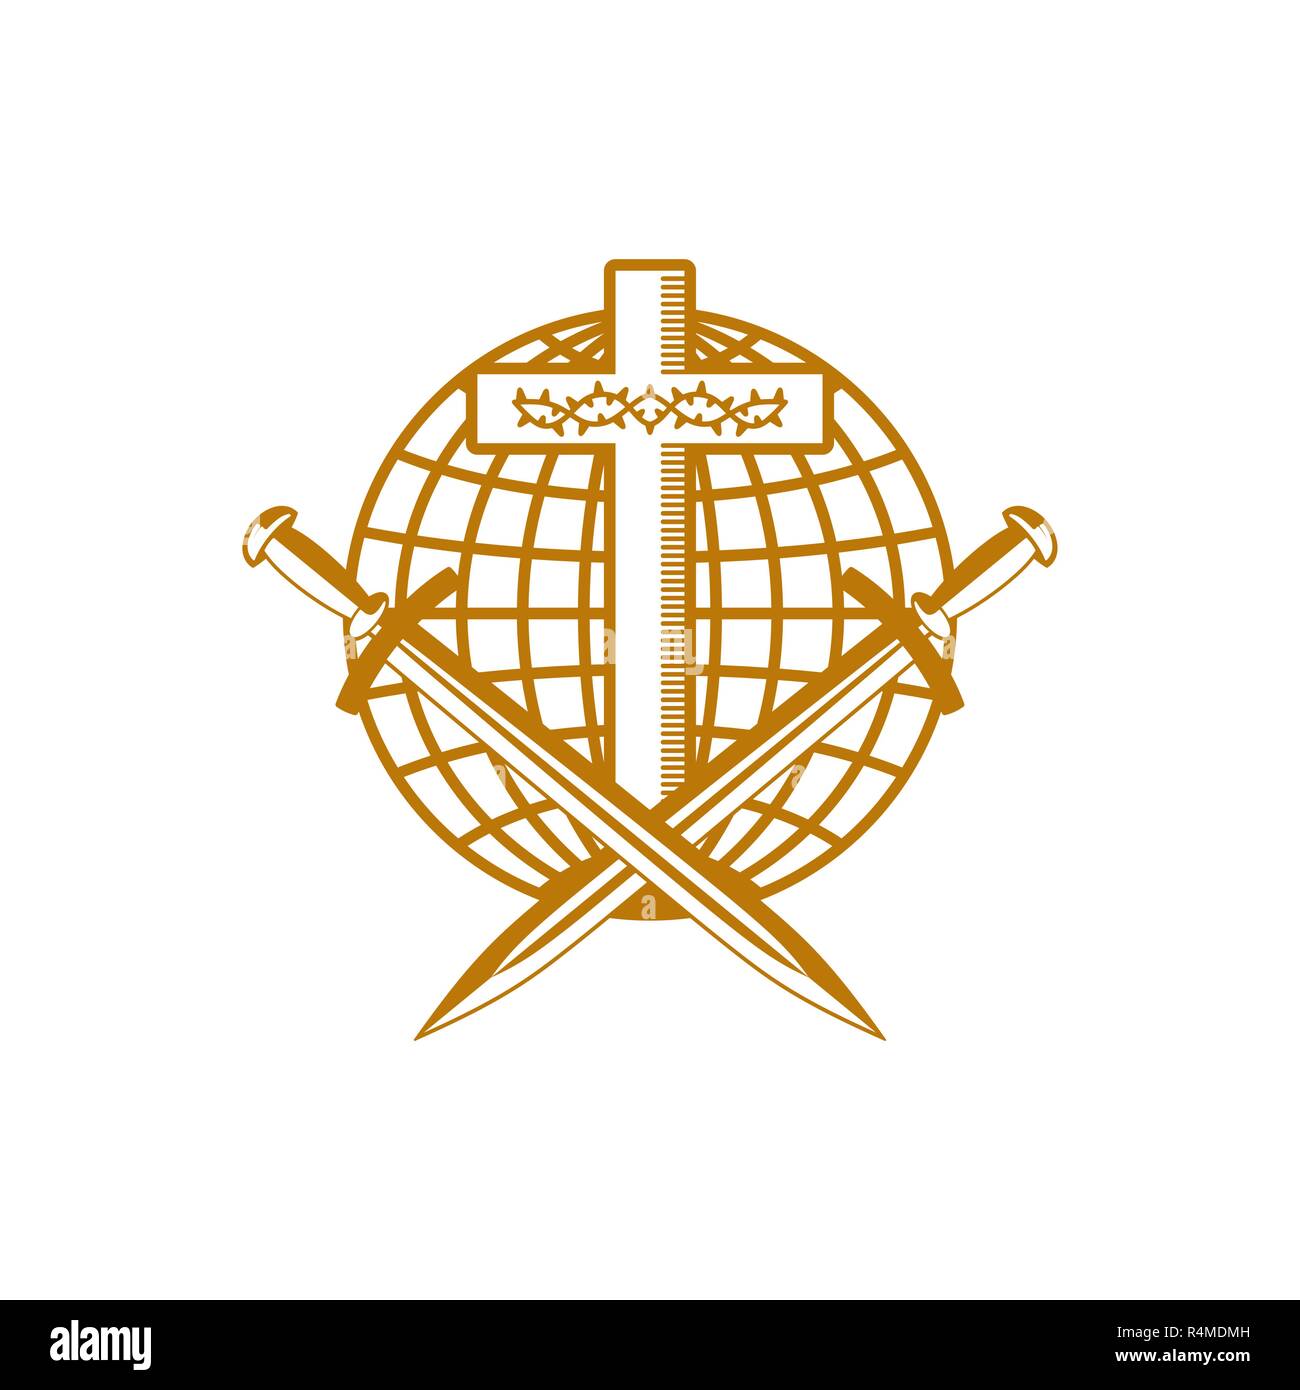 Kirche Logo. Christliche Symbole. Kreuz von Jesus Christus, Globus,  Dornenkrone und Schwerter Stock-Vektorgrafik - Alamy